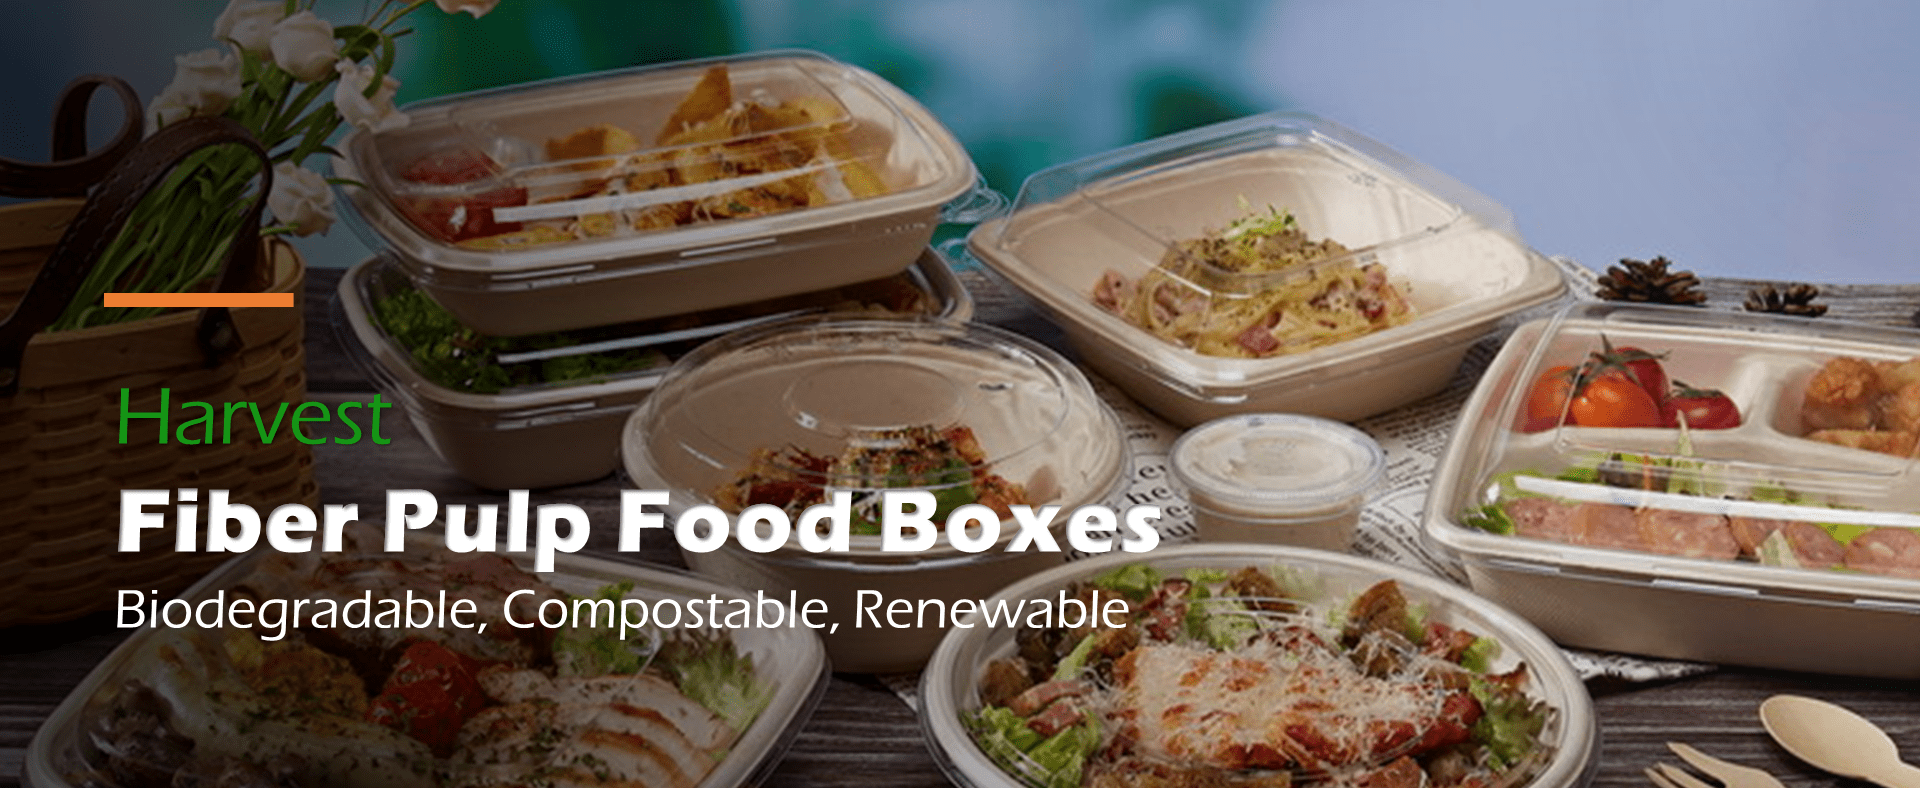 Fiber Pulp Food Boxes